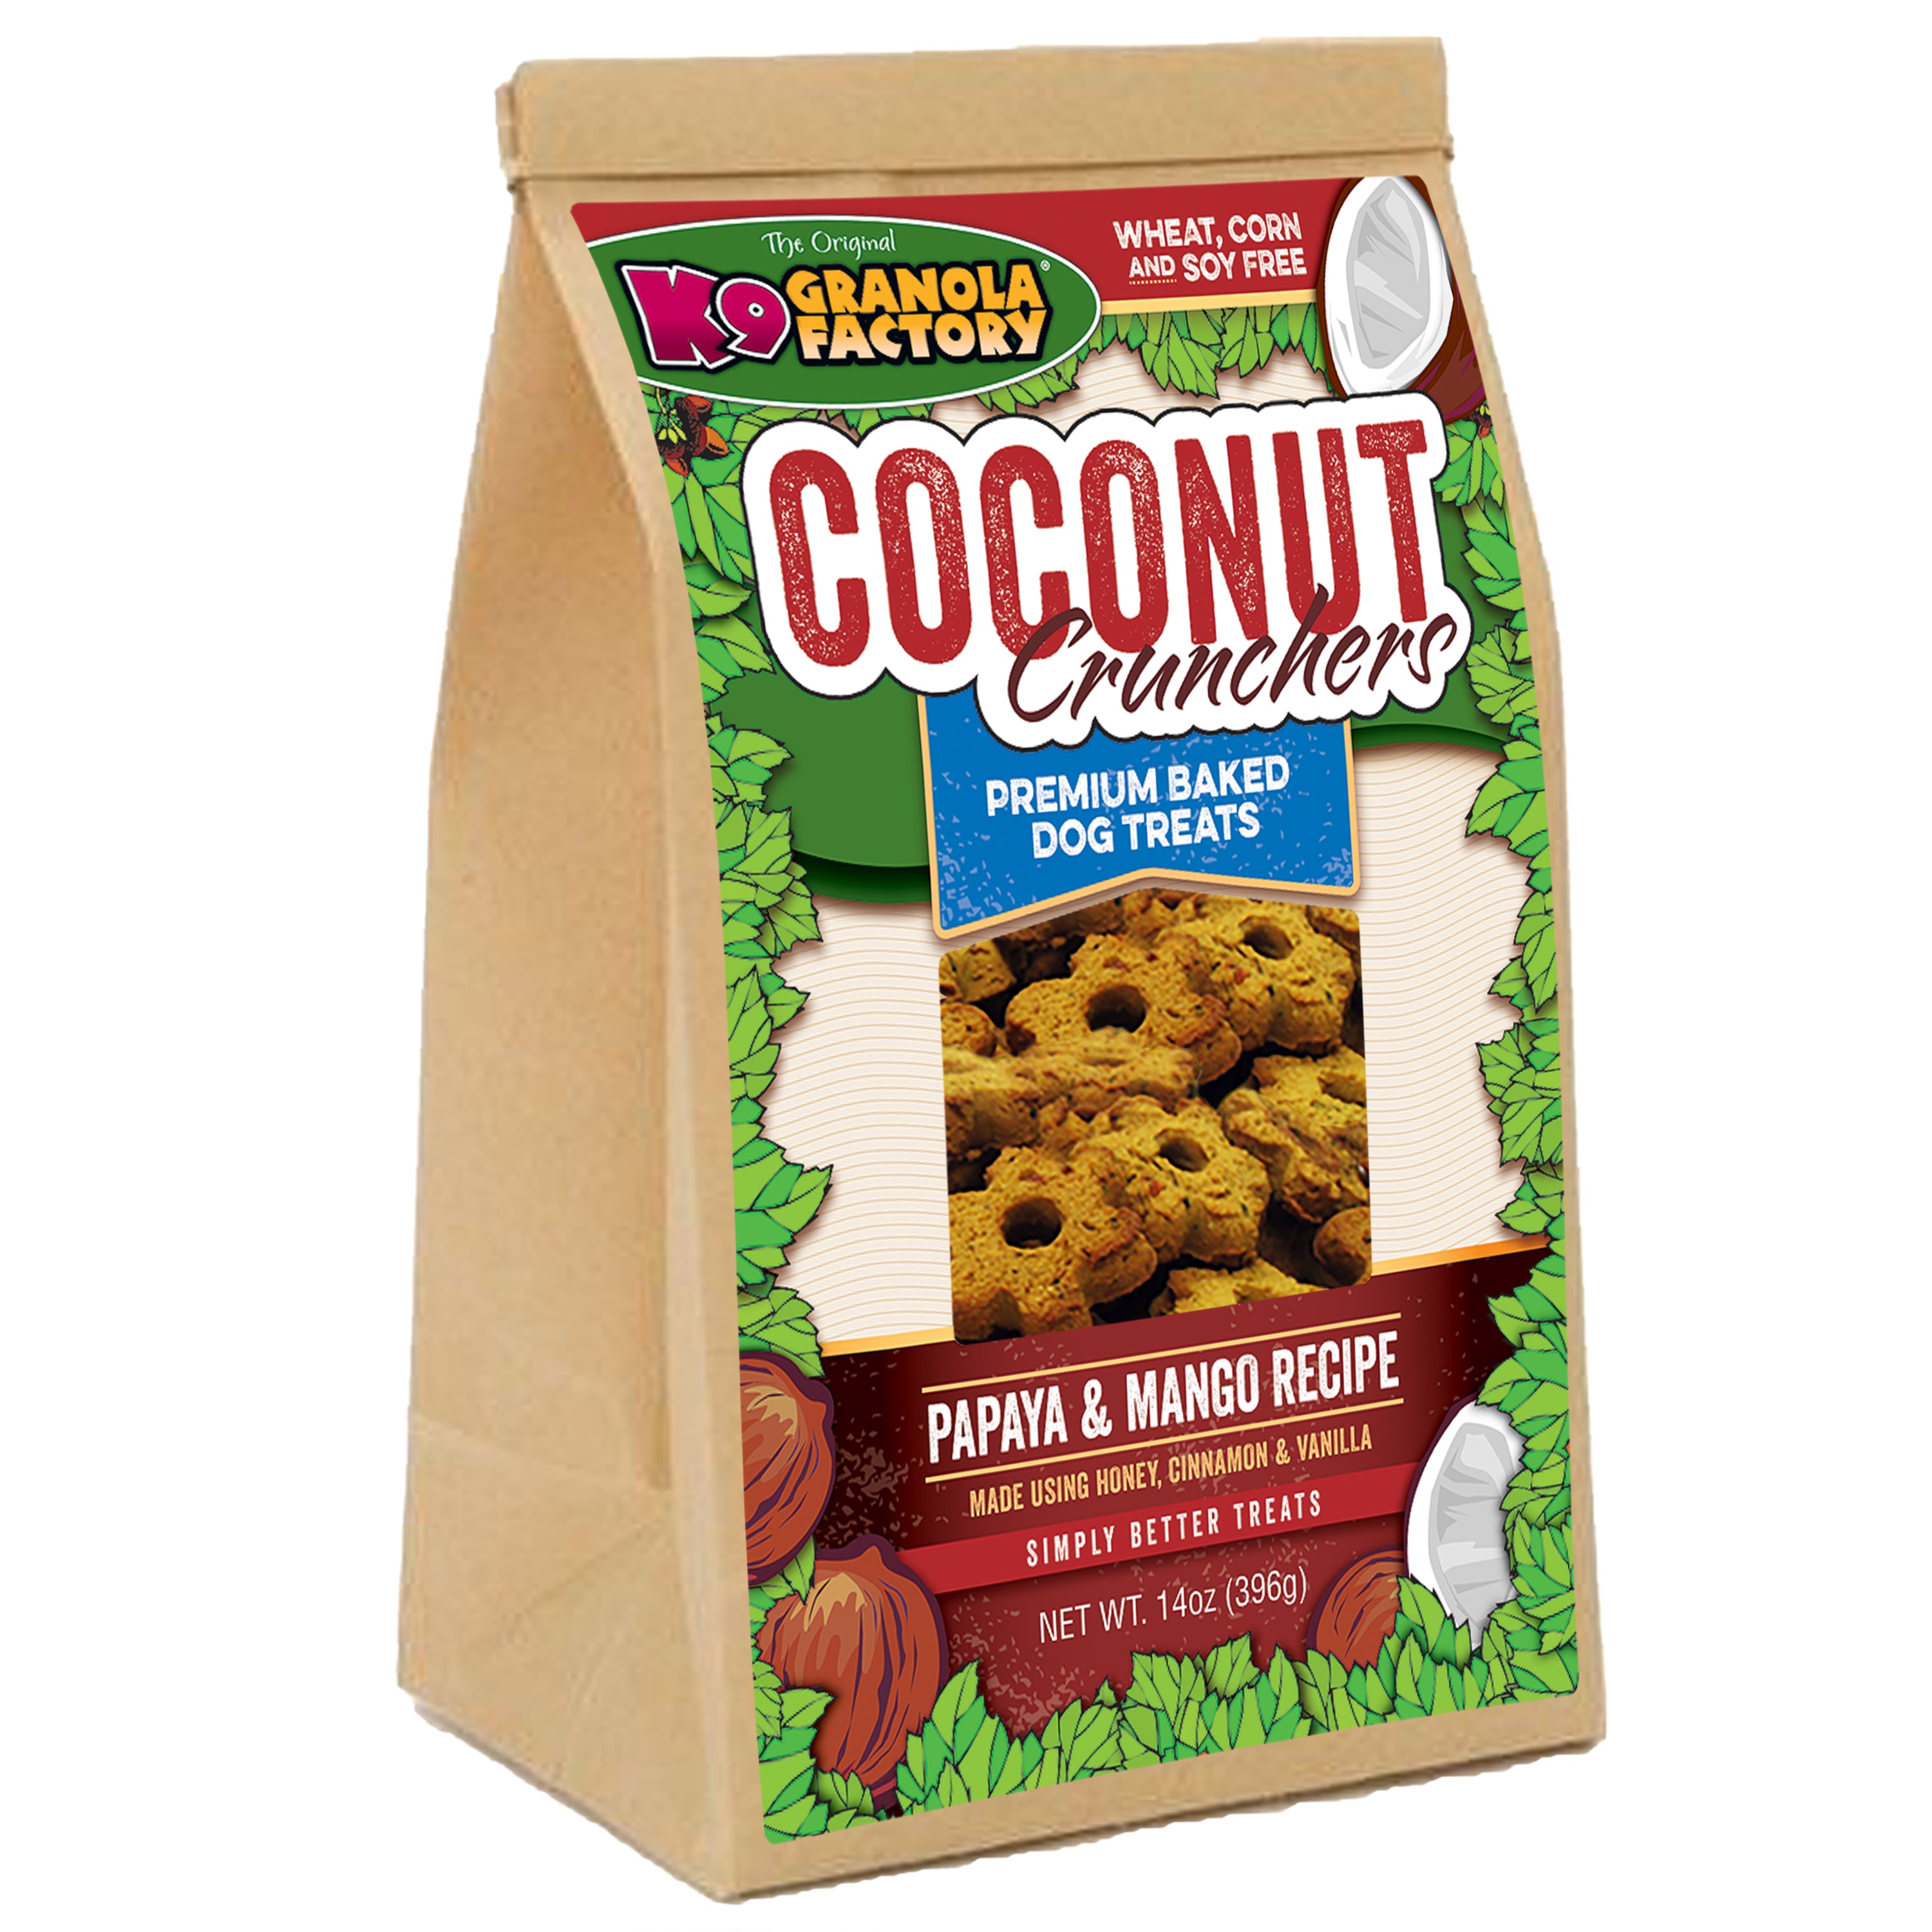 K9 Granola Factory Coconut Crunchers Dog Treats, Papaya & Mango